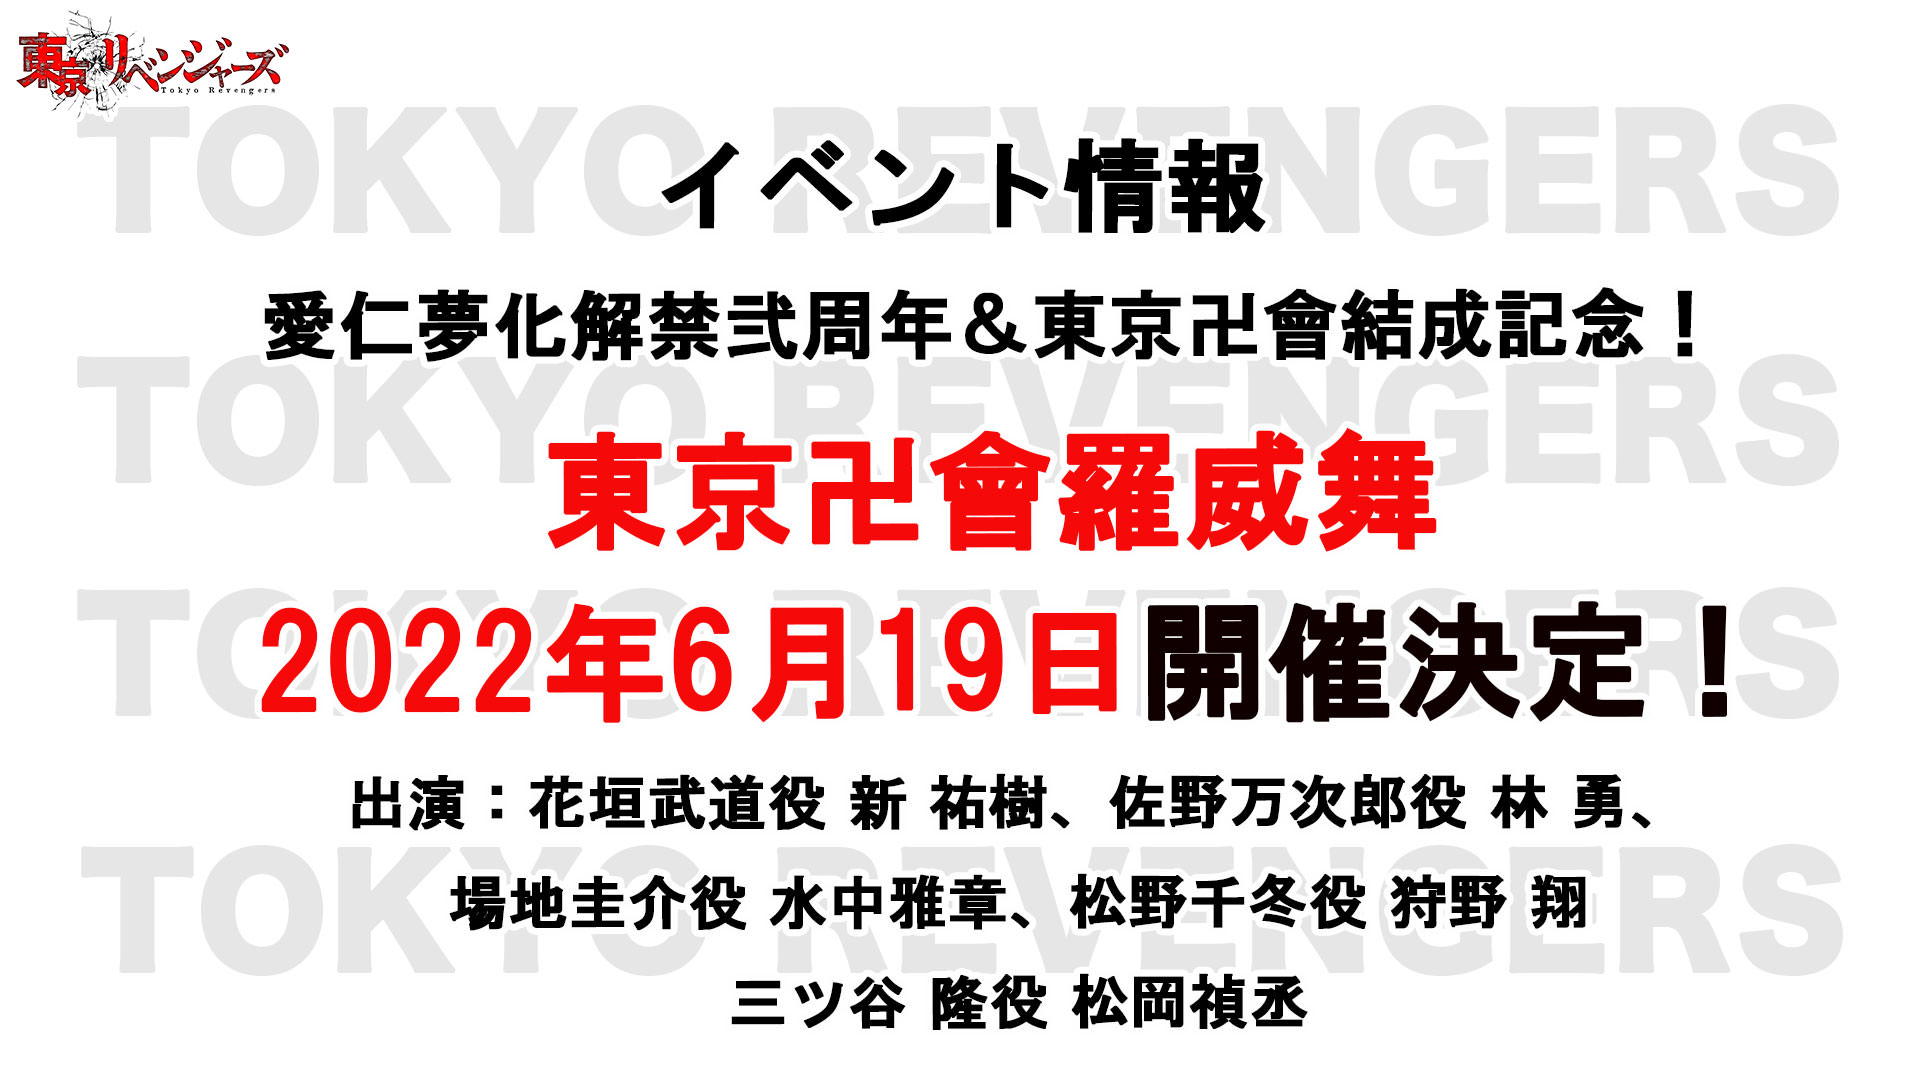 東京リベンジャーズ 東卍結成日である6月19日にスペシャルイベント開催!